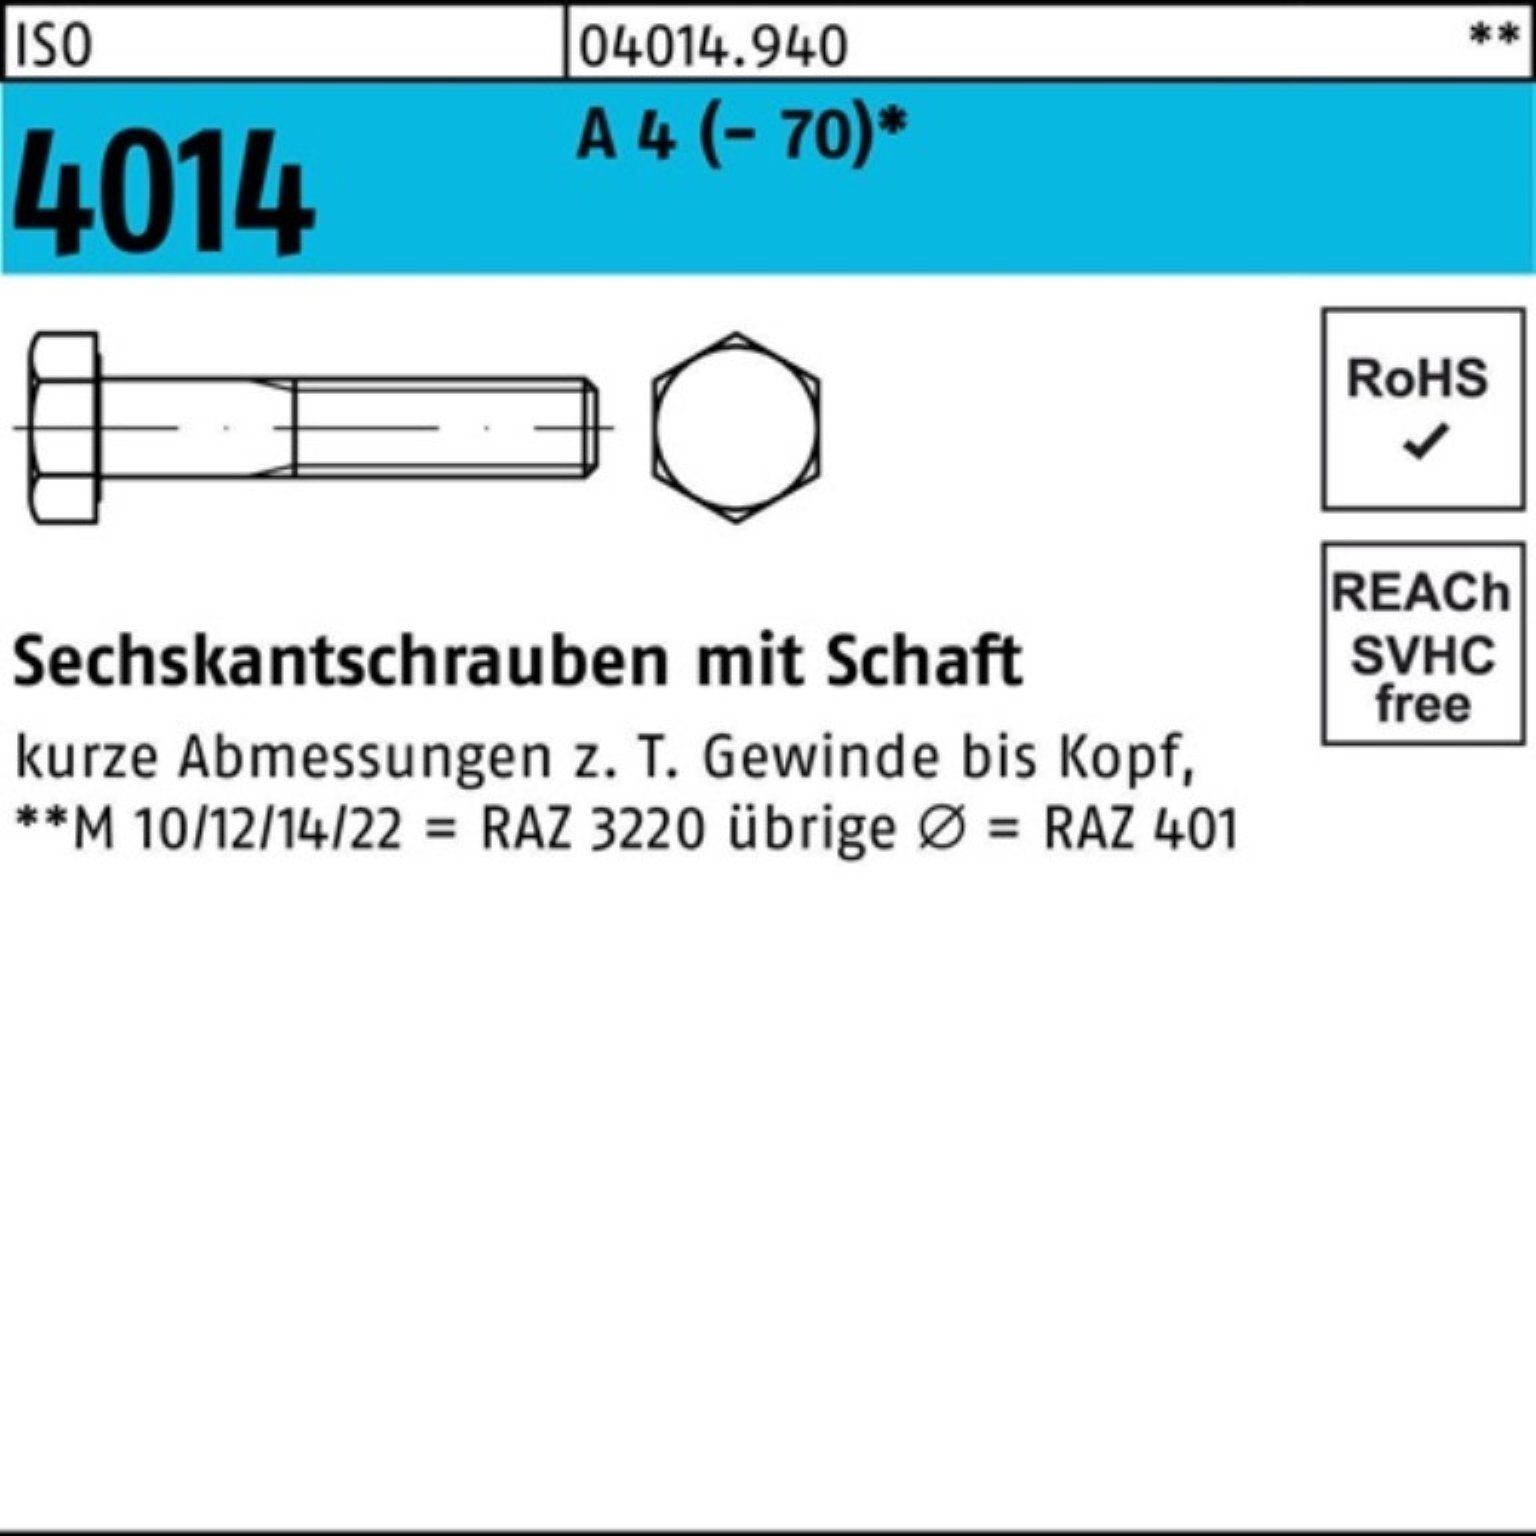 90 Pack Sechskantschraube Bufab 100er 4014 4 (70) St Schaft M22x Sechskantschraube ISO 10 A